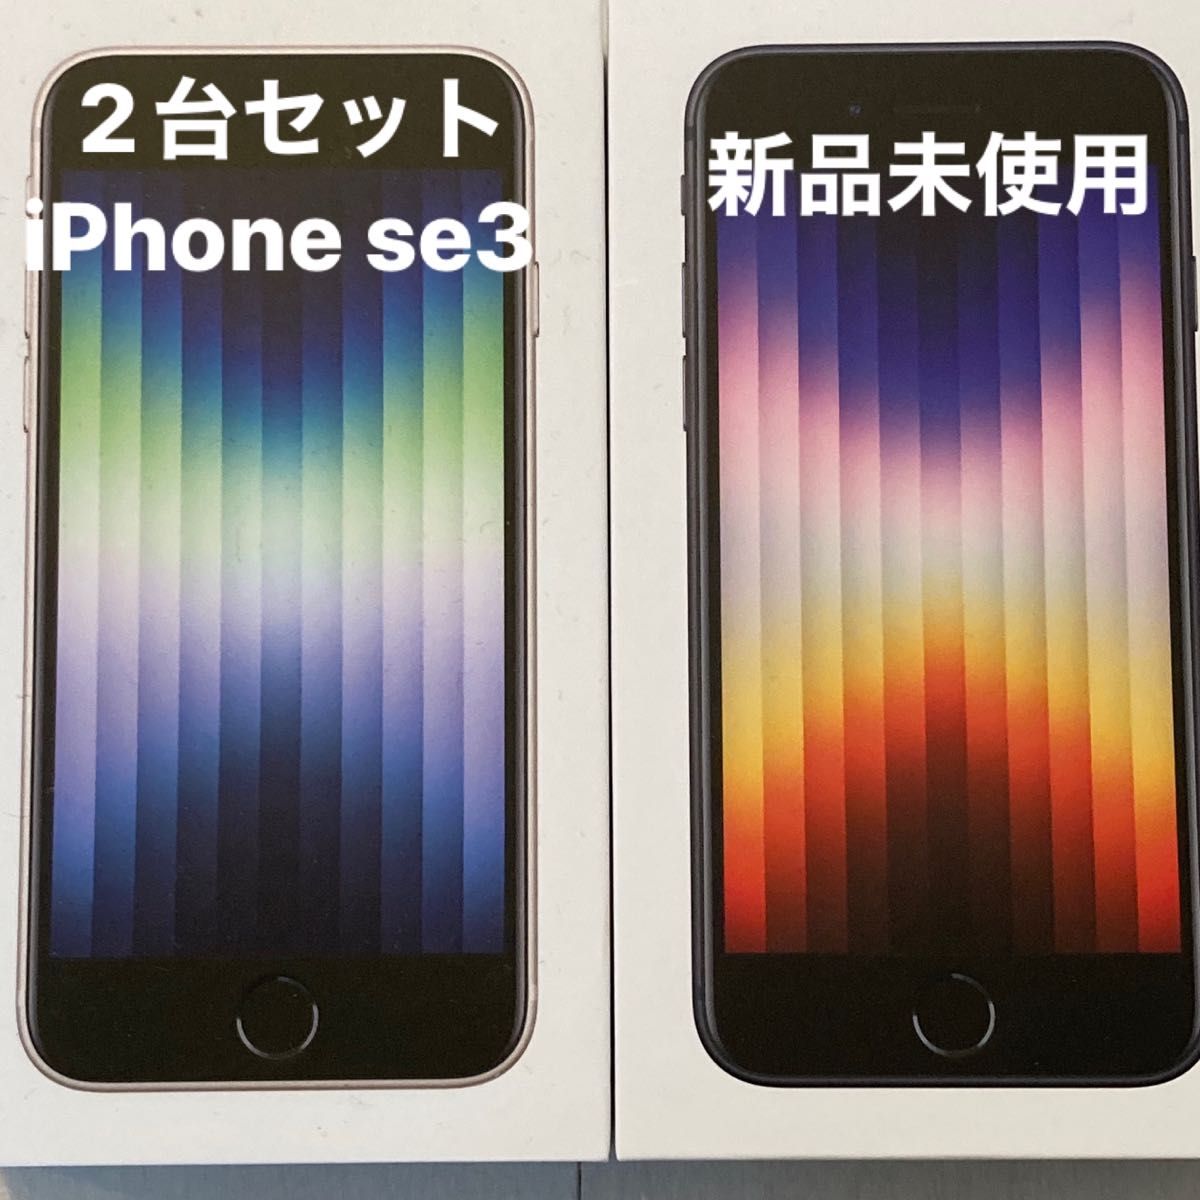 新品 iPhone se3(第3世代) SIMフリー スターライト ミッドナイト 2台セット